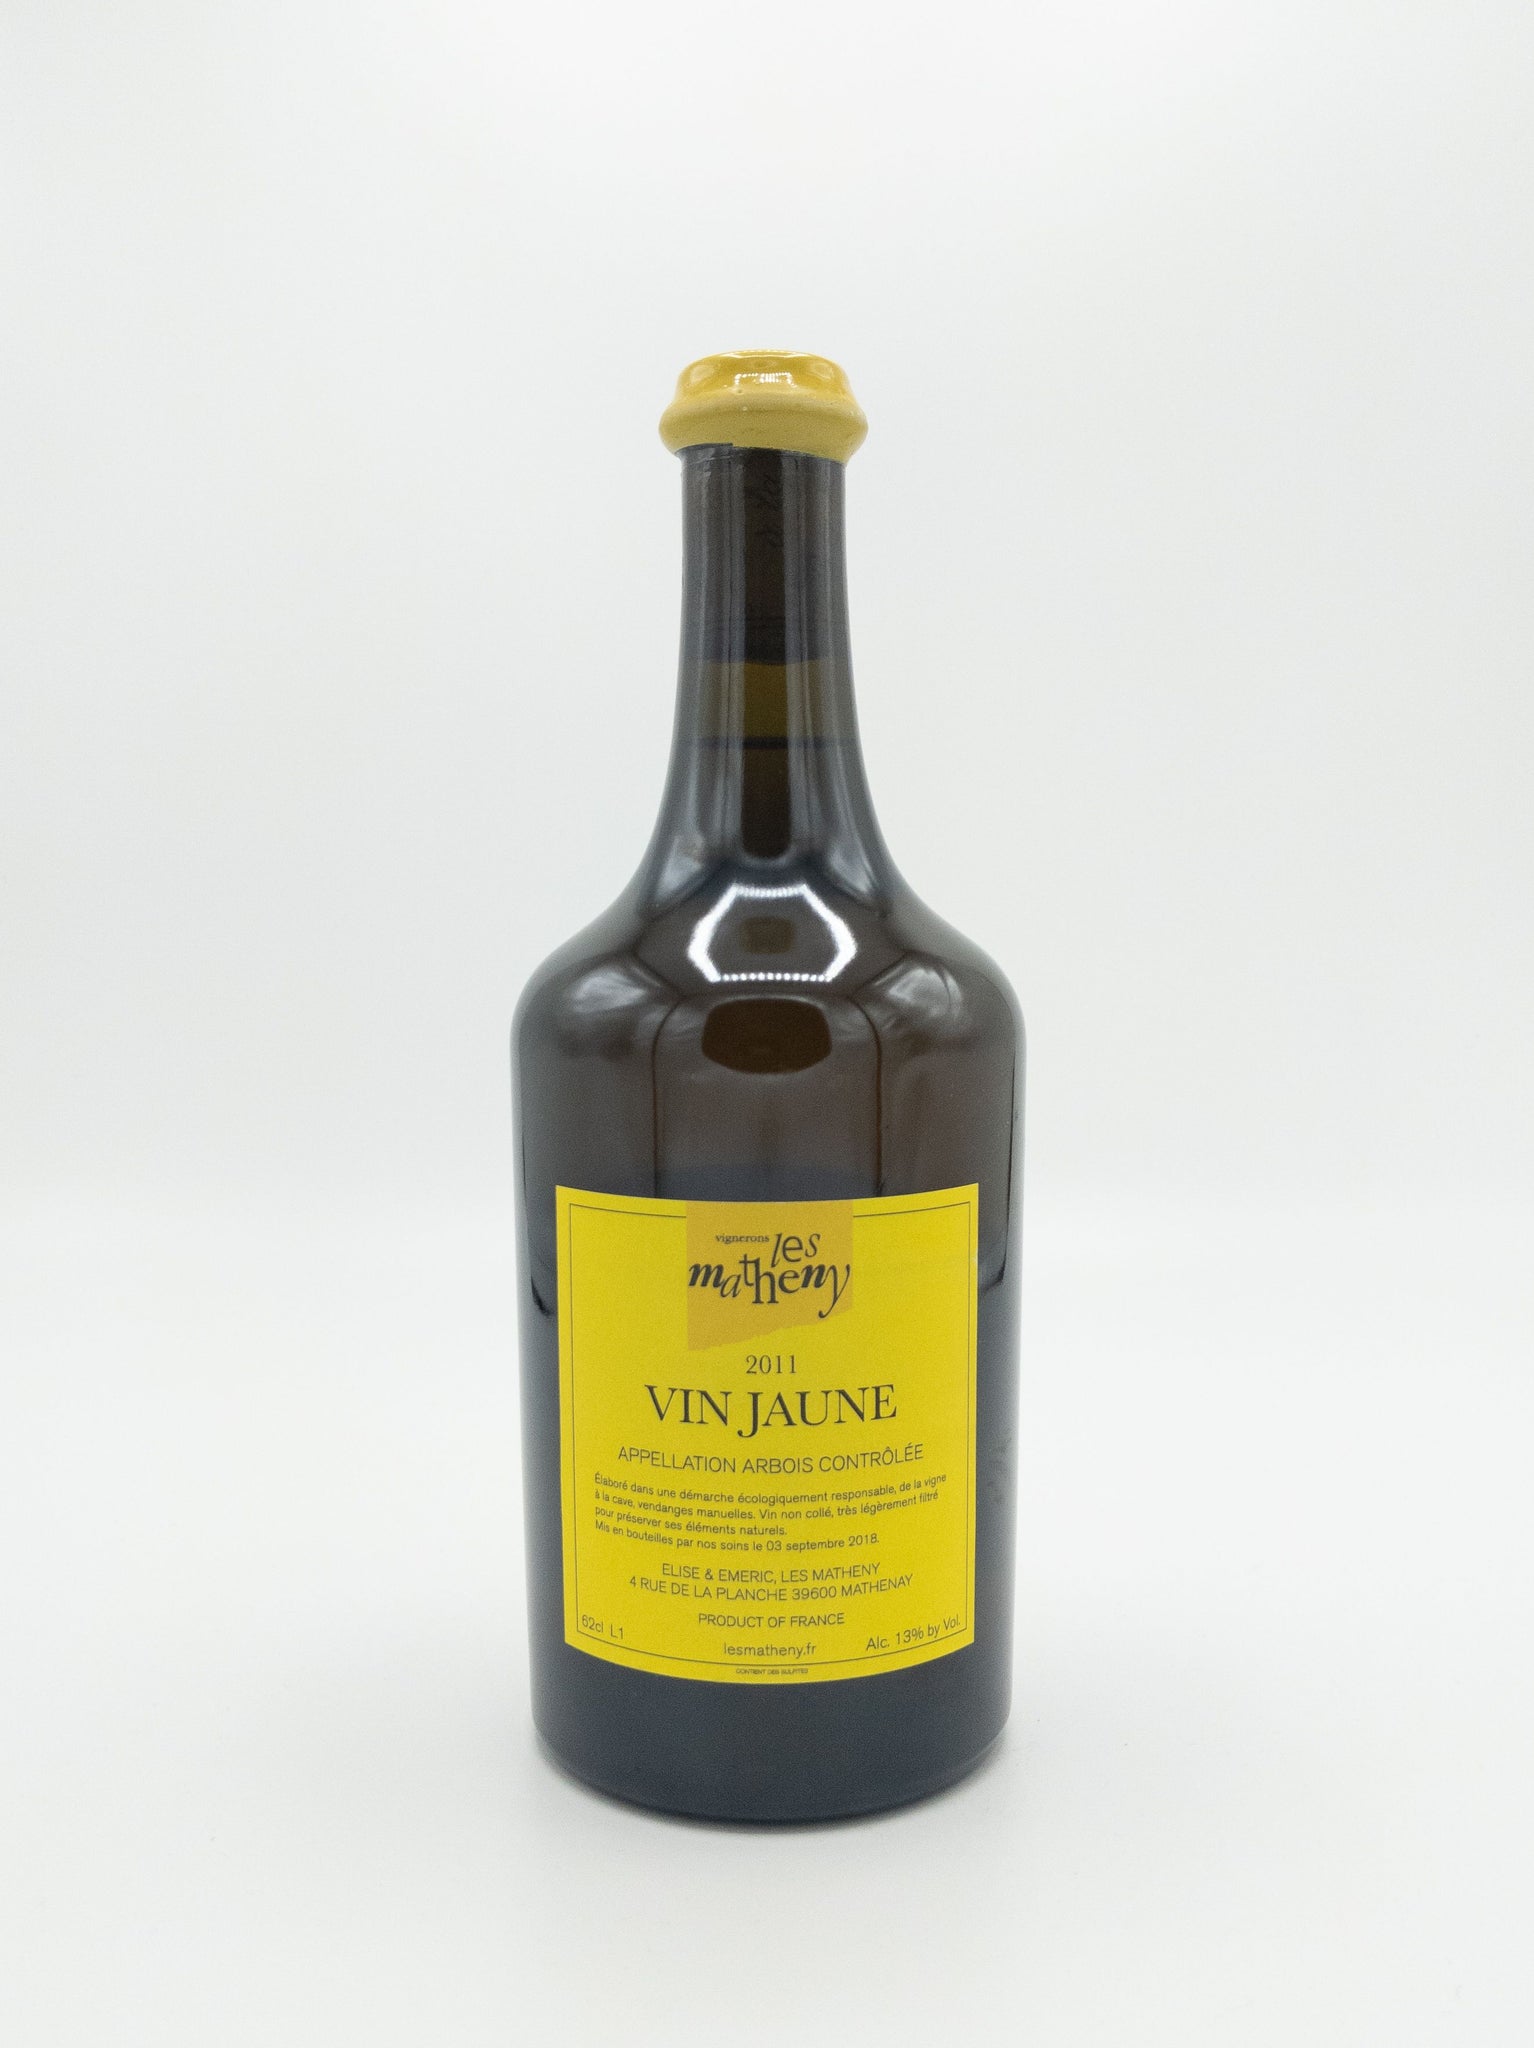 Les Matheny 'Vin Jaune' 2011 (620 ml)